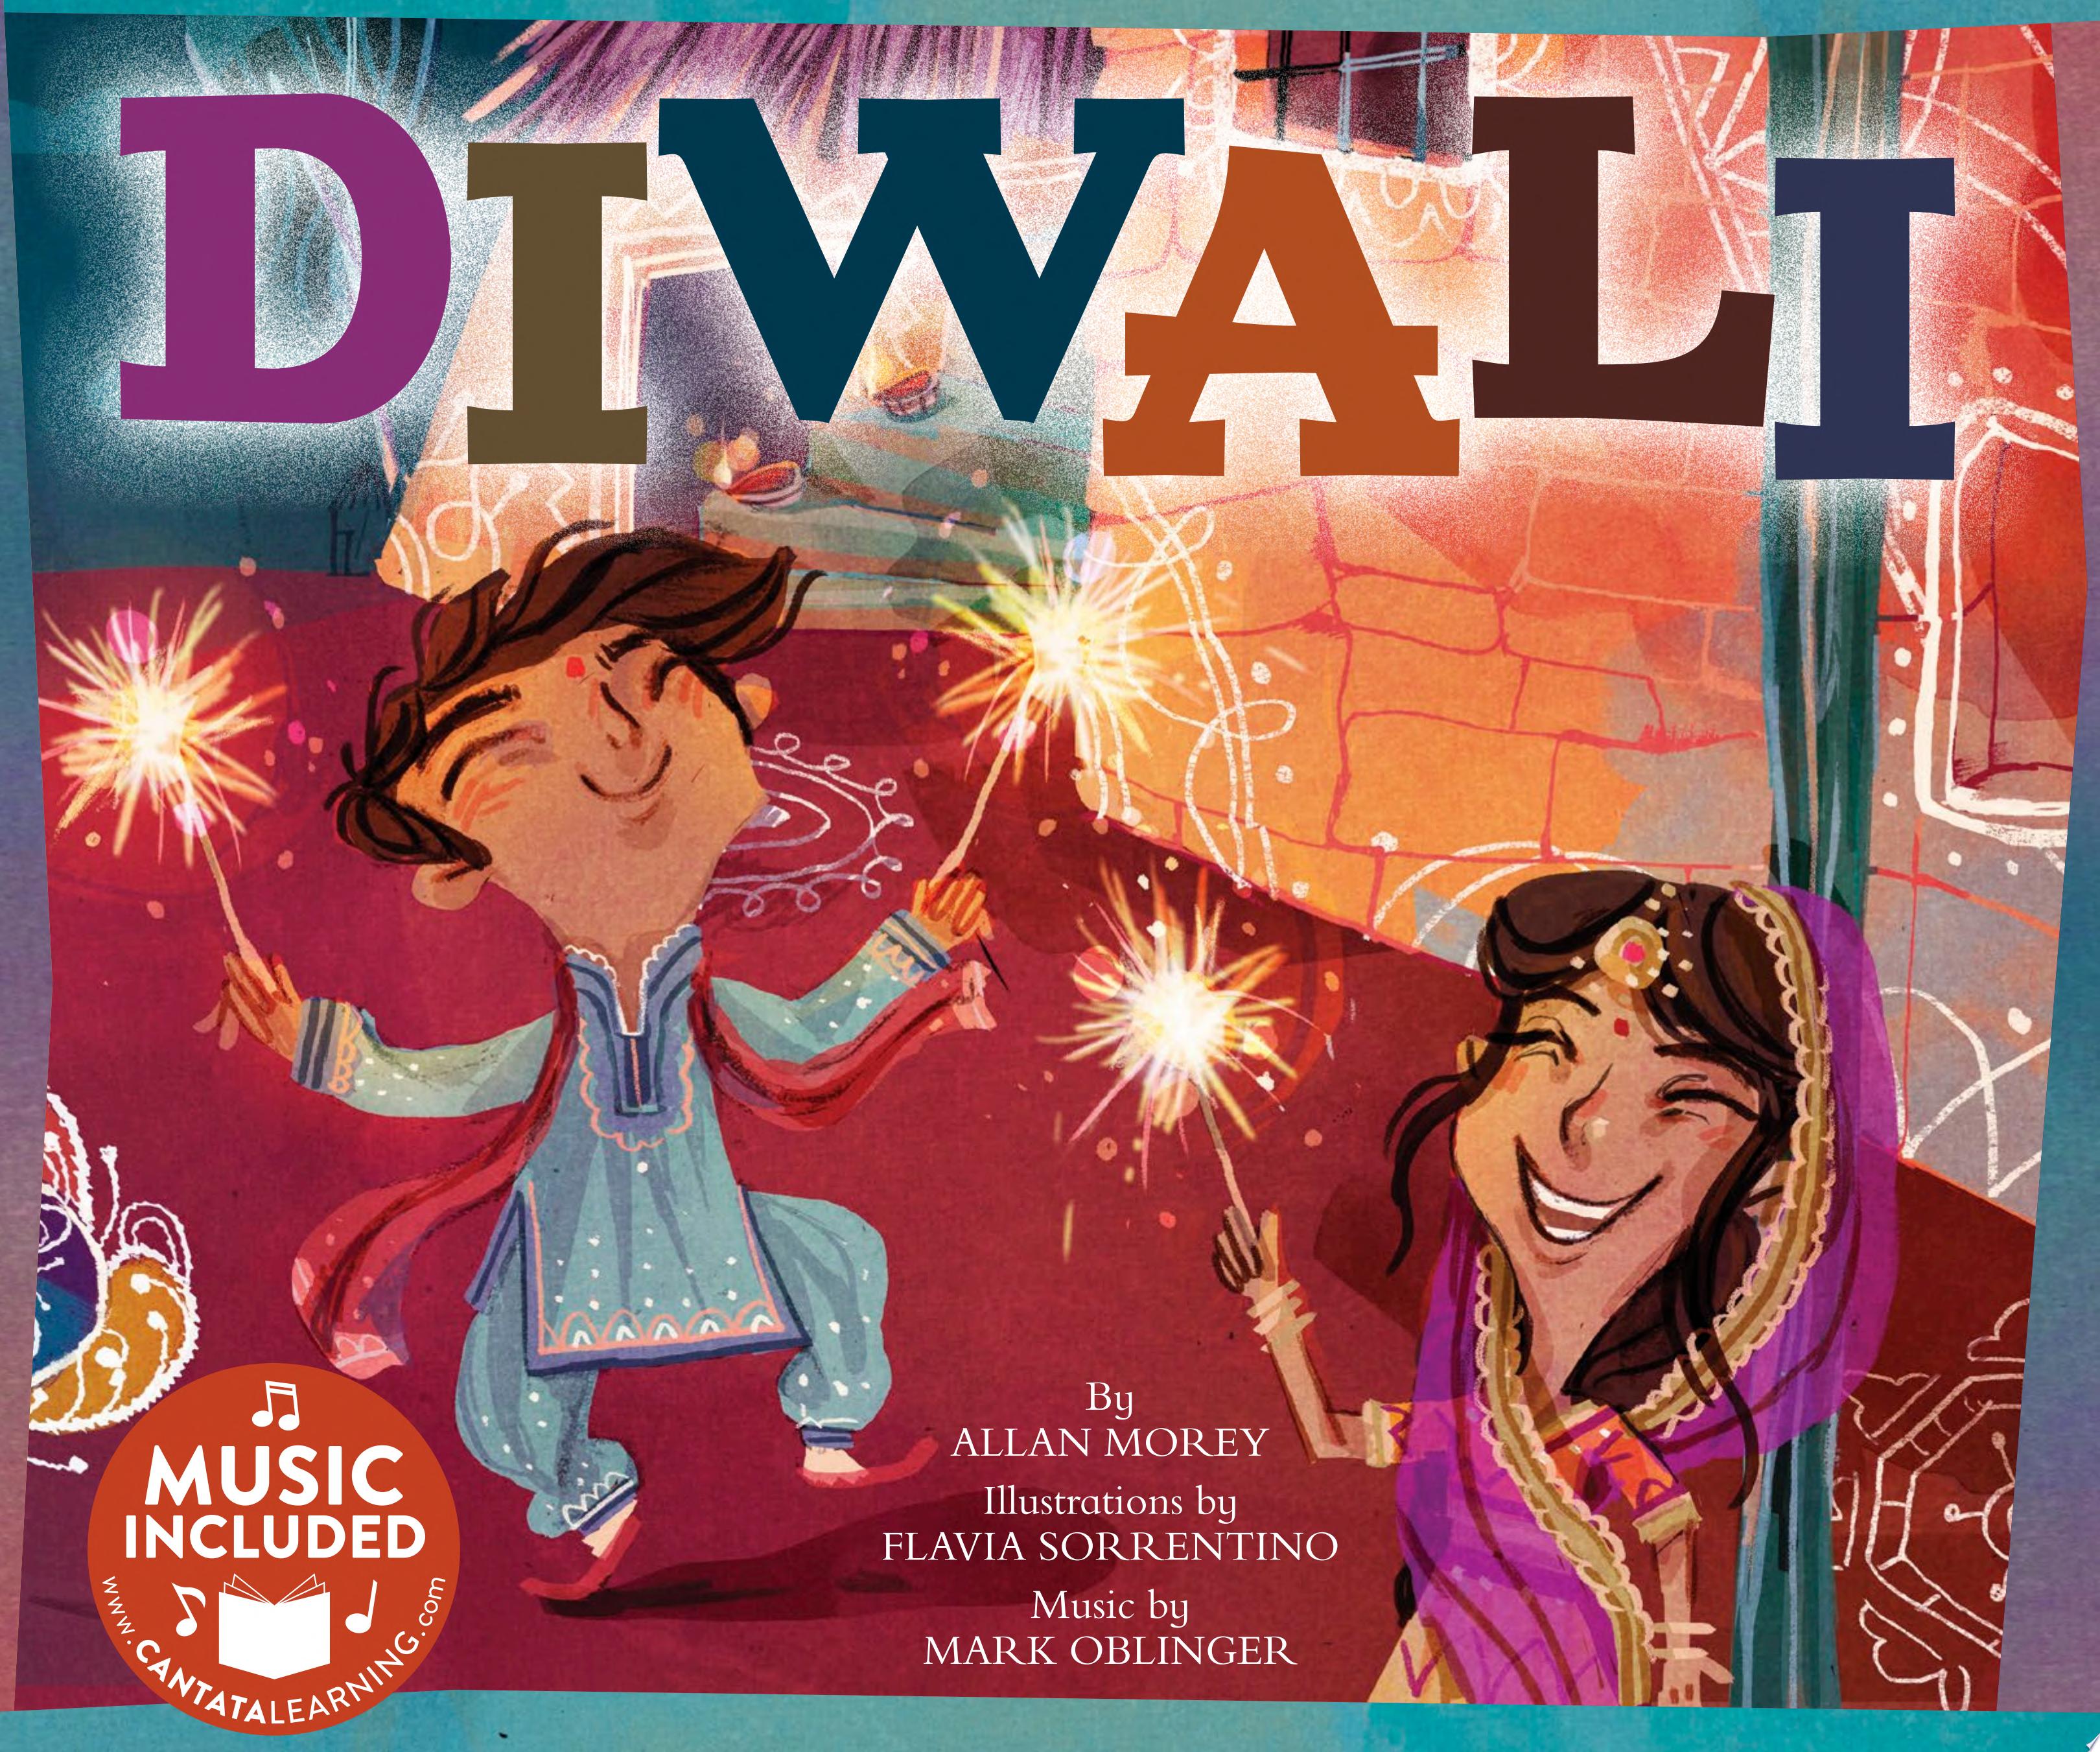 Image for "Diwali"